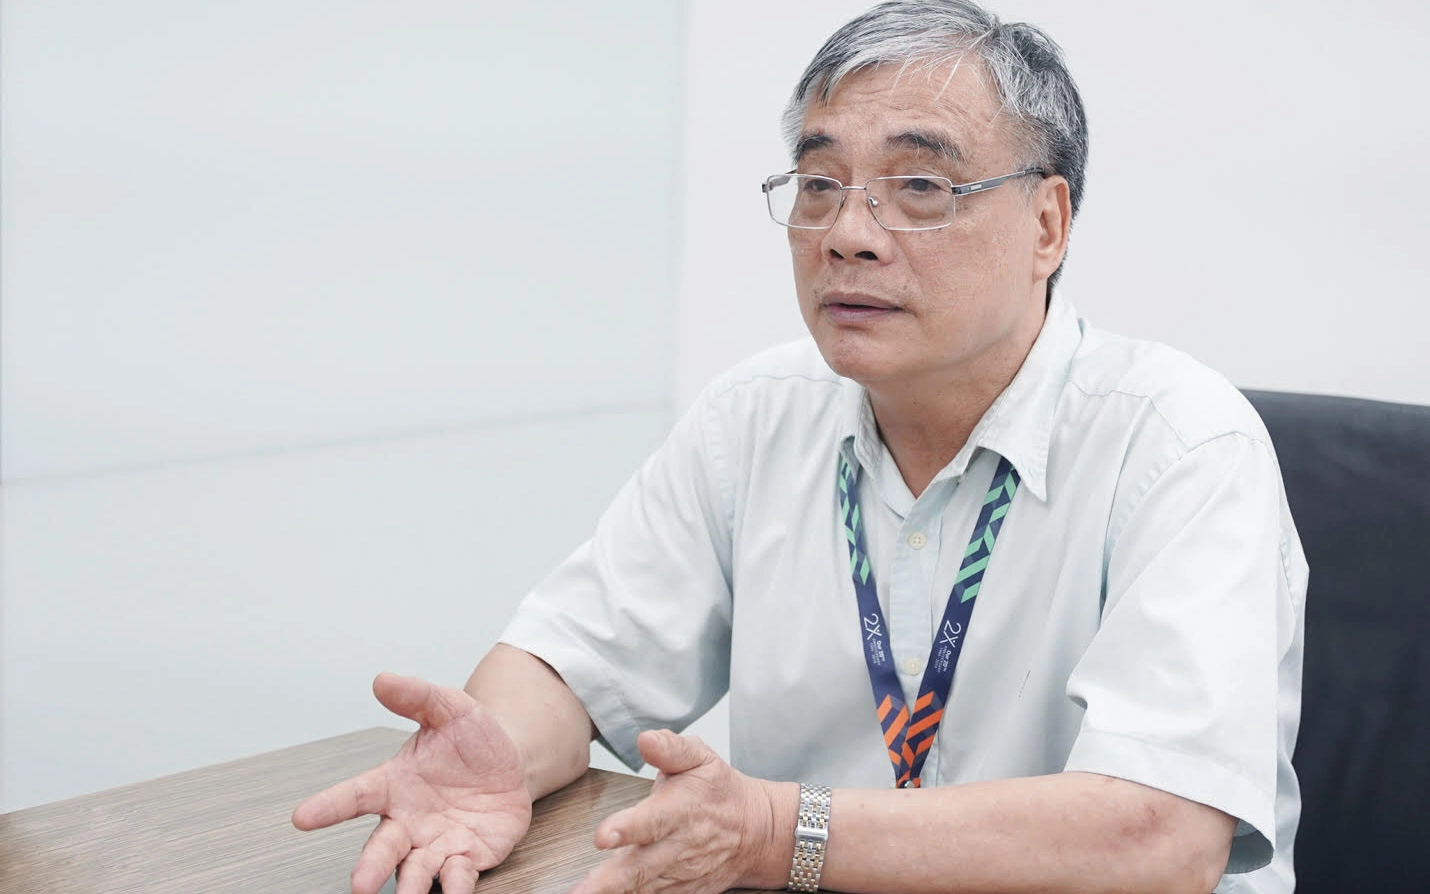 Phó GS, Tiến sỹ Trần Đình Thiên: Covid-19 gây đứt chuỗi cung ứng toàn cầu nhưng quan trọng không phải nối lại chuỗi mà là thay đổi chuỗi và tạo chuỗi mới